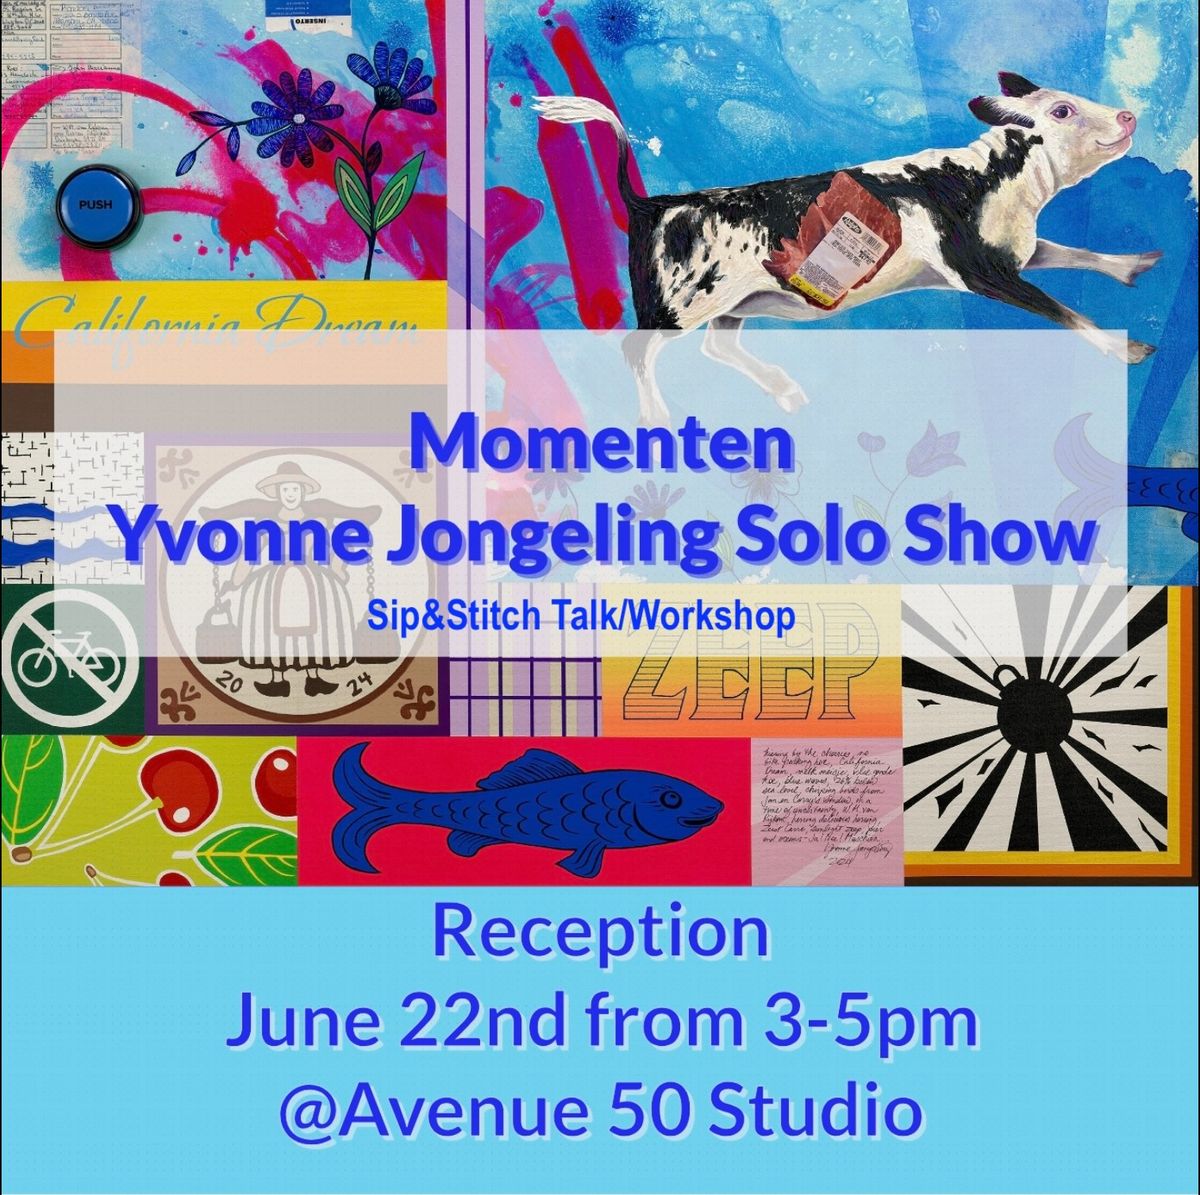 Yvonne Jongeling Solo Show & Workshop